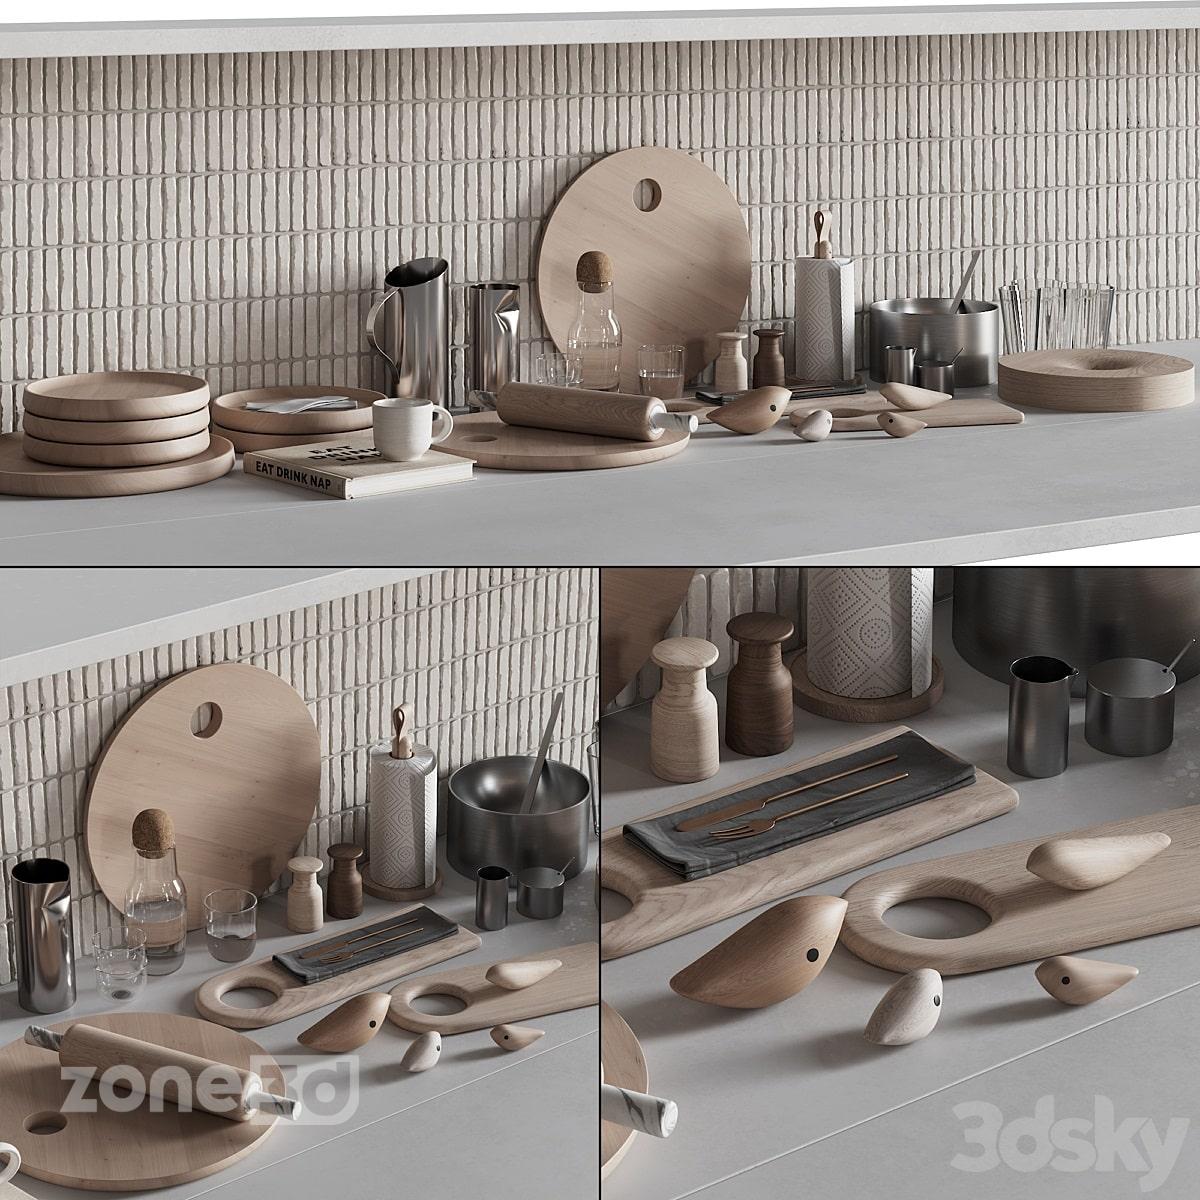 آبجکت ست ظروف چوبی و فلزی مدرن آشپزخانه به همراه لوازم دکوری